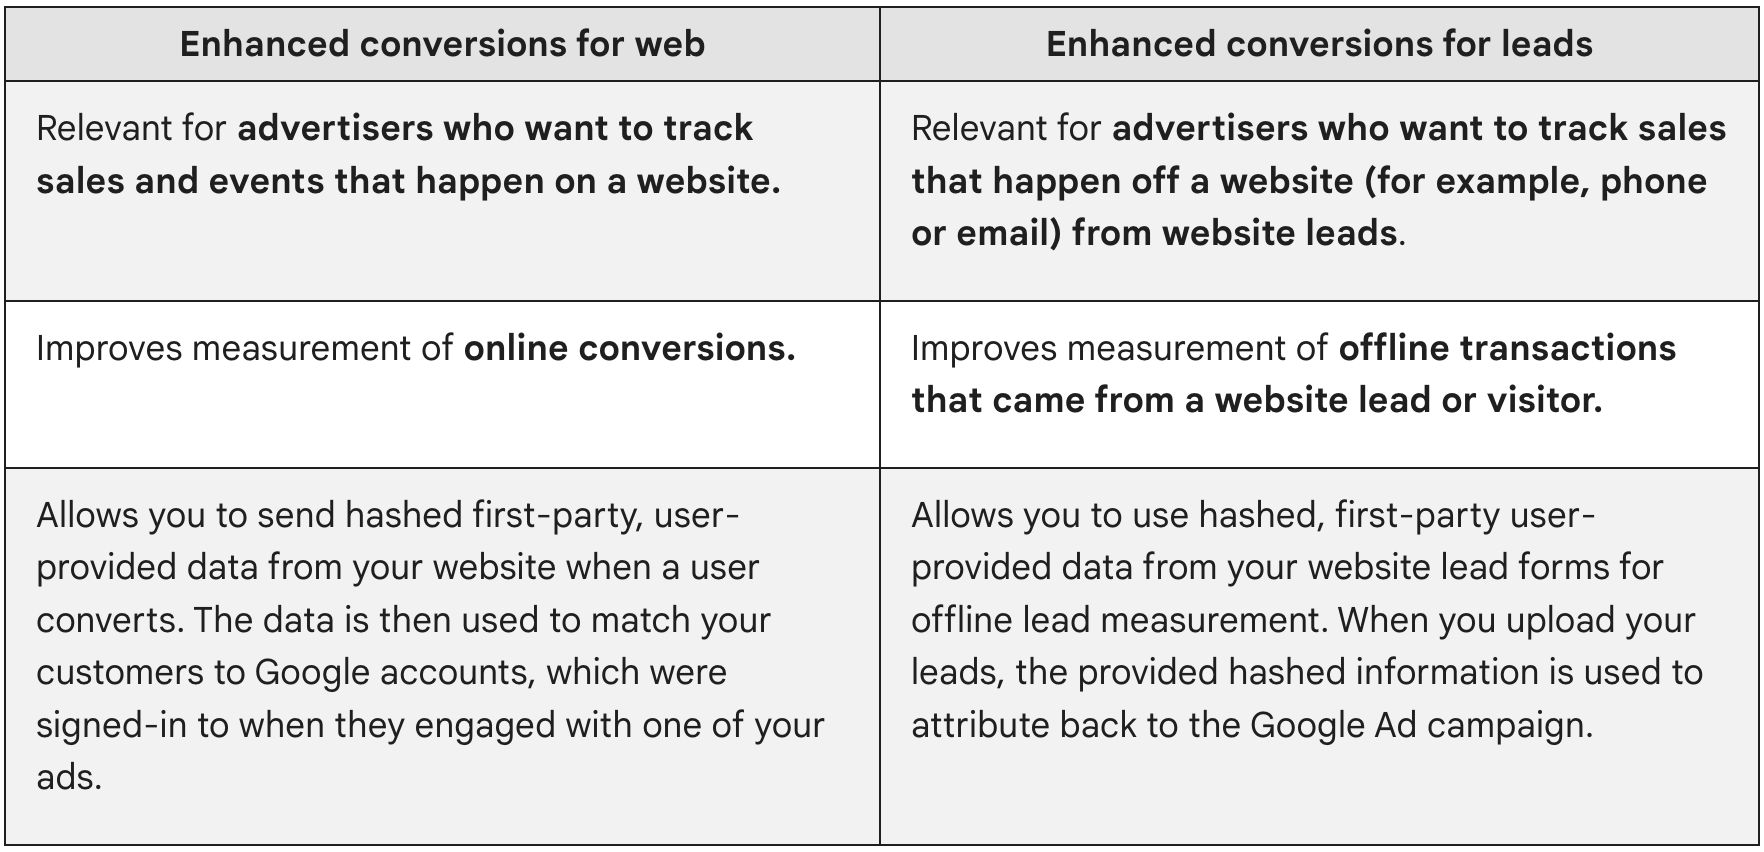 拡張コンバージョン（ウェブ向け）は、ウェブサイトで発生する販売やイベントをトラッキングしたい広告主様に適しています。リードの拡張コンバージョンは、ウェブサイトで見込み顧客がウェブサイト外（電話やメールなど）で達成した販売をトラッキングしたいとお考えの広告主様に適しています。